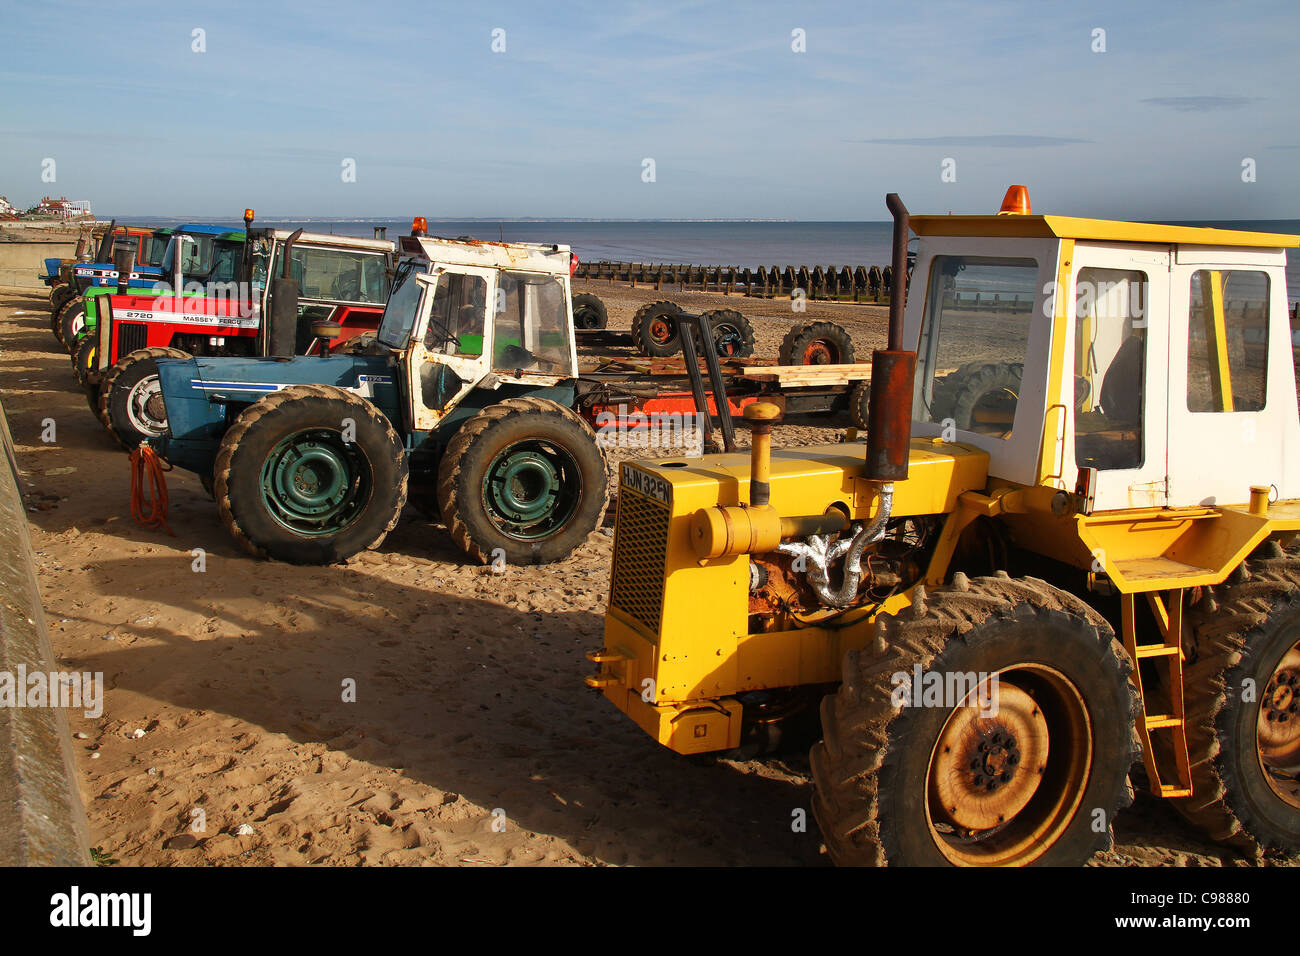 Tractores en playa utilizada para lanzar y recuperar los buques de pesca. Foto de stock